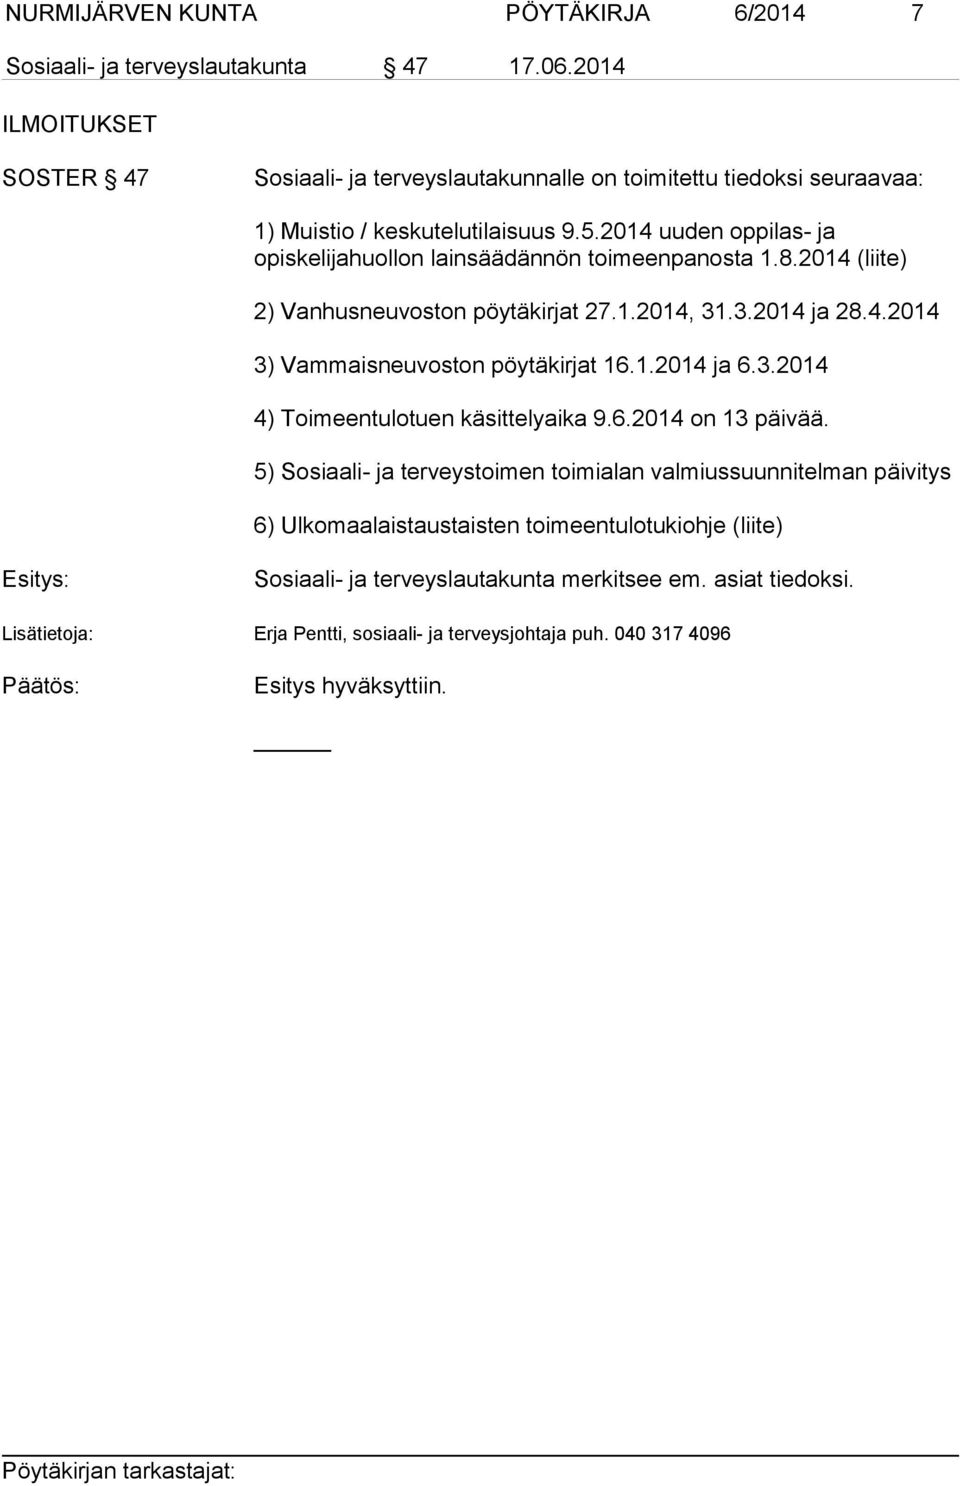 2014 uuden oppilas- ja opiskelijahuollon lainsäädännön toimeenpanosta 1.8.2014 (liite) 2) Vanhusneuvoston pöytäkirjat 27.1.2014, 31.3.2014 ja 28.4.2014 3) Vammaisneuvoston pöytäkirjat 16.1.2014 ja 6.